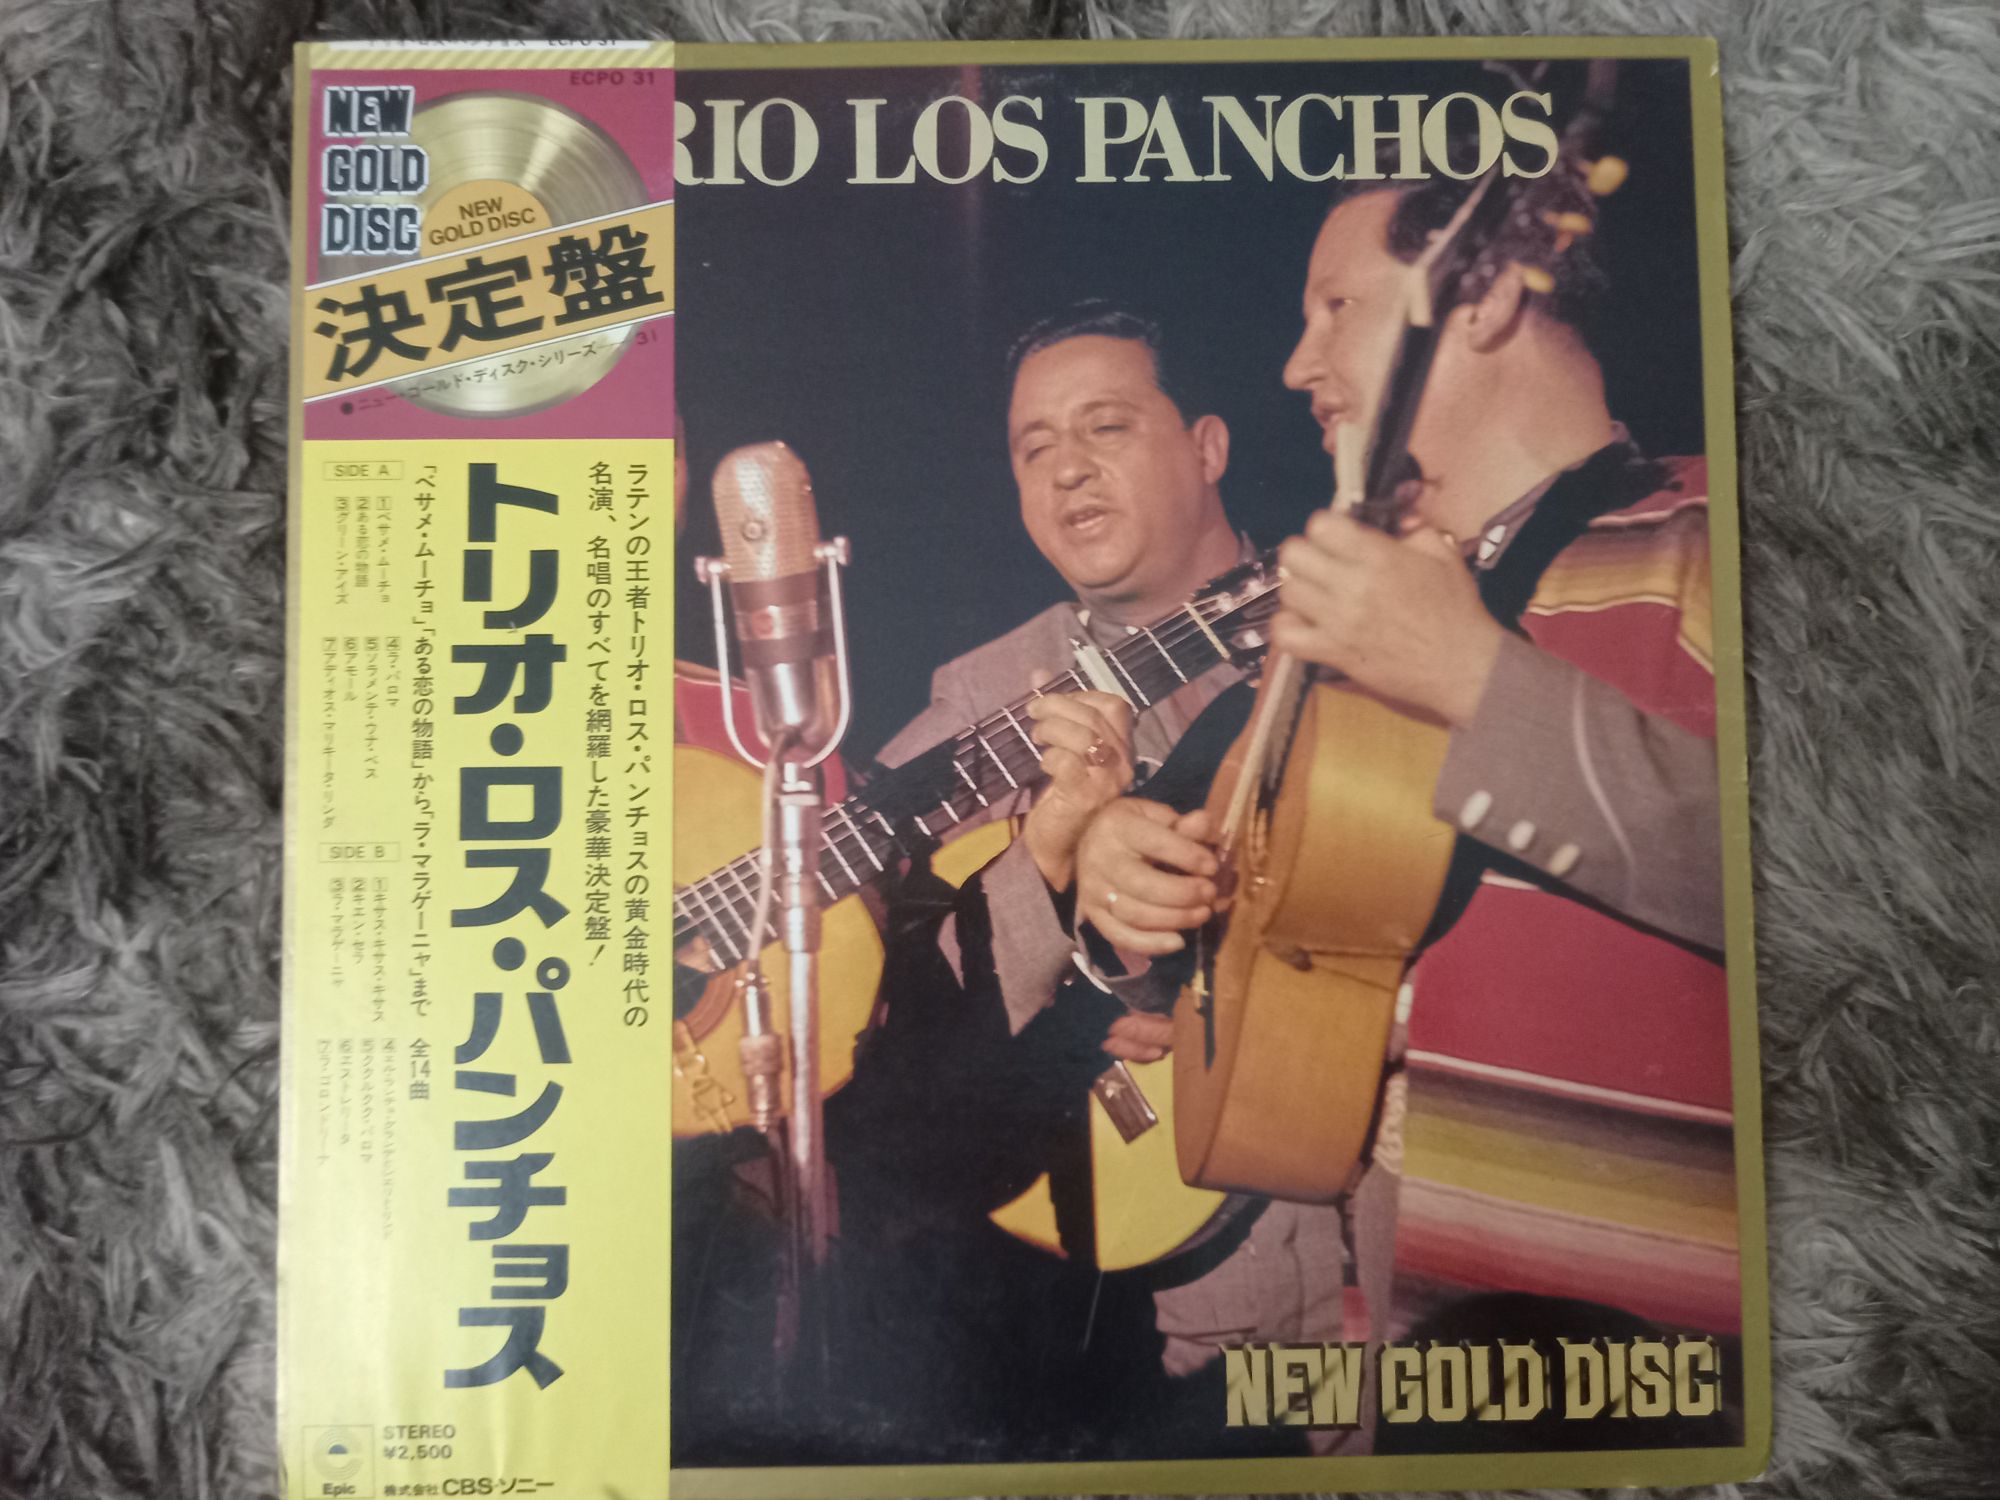 แผ่นเสียง Trio Los Panchos – New Gold Disc